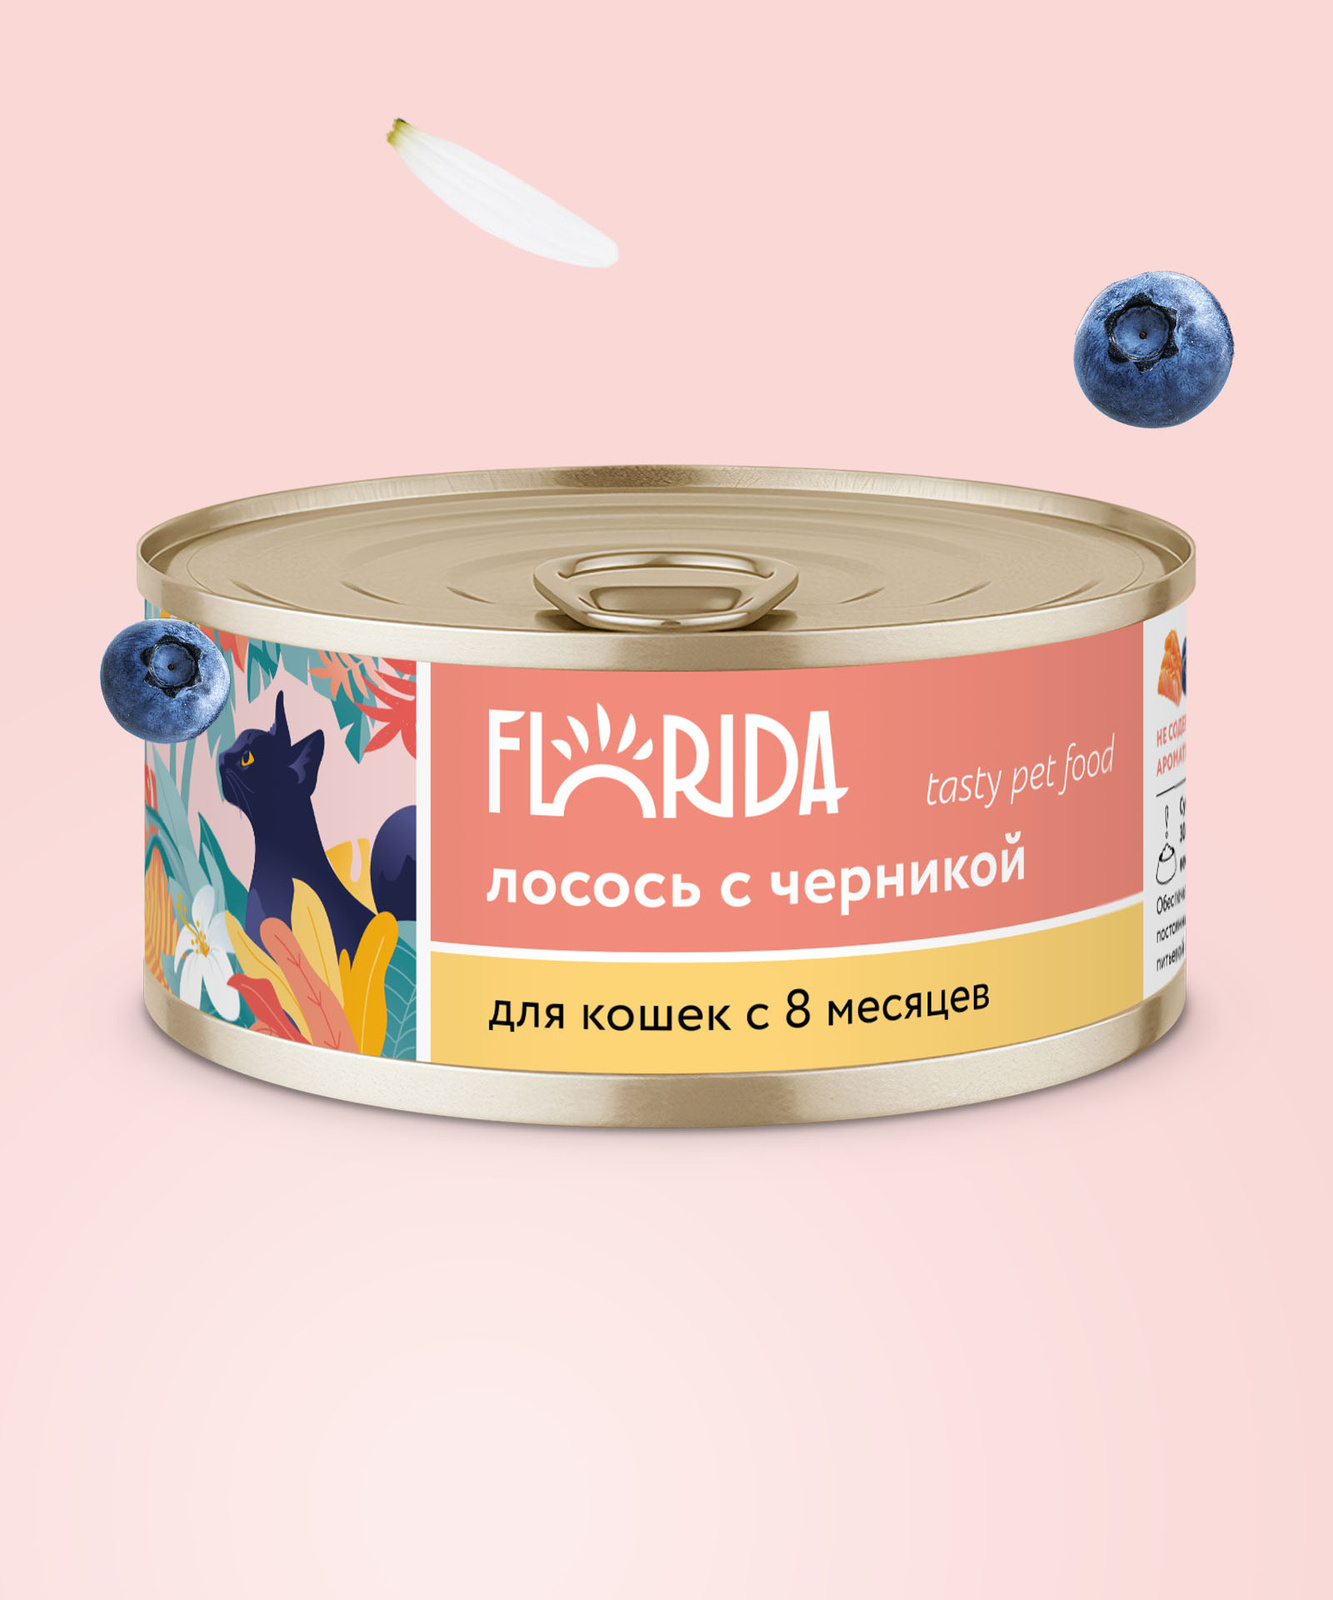 FLORIDA консервы FLORIDA консервы для кошек Лосось с черникой (100 г) цена и фото